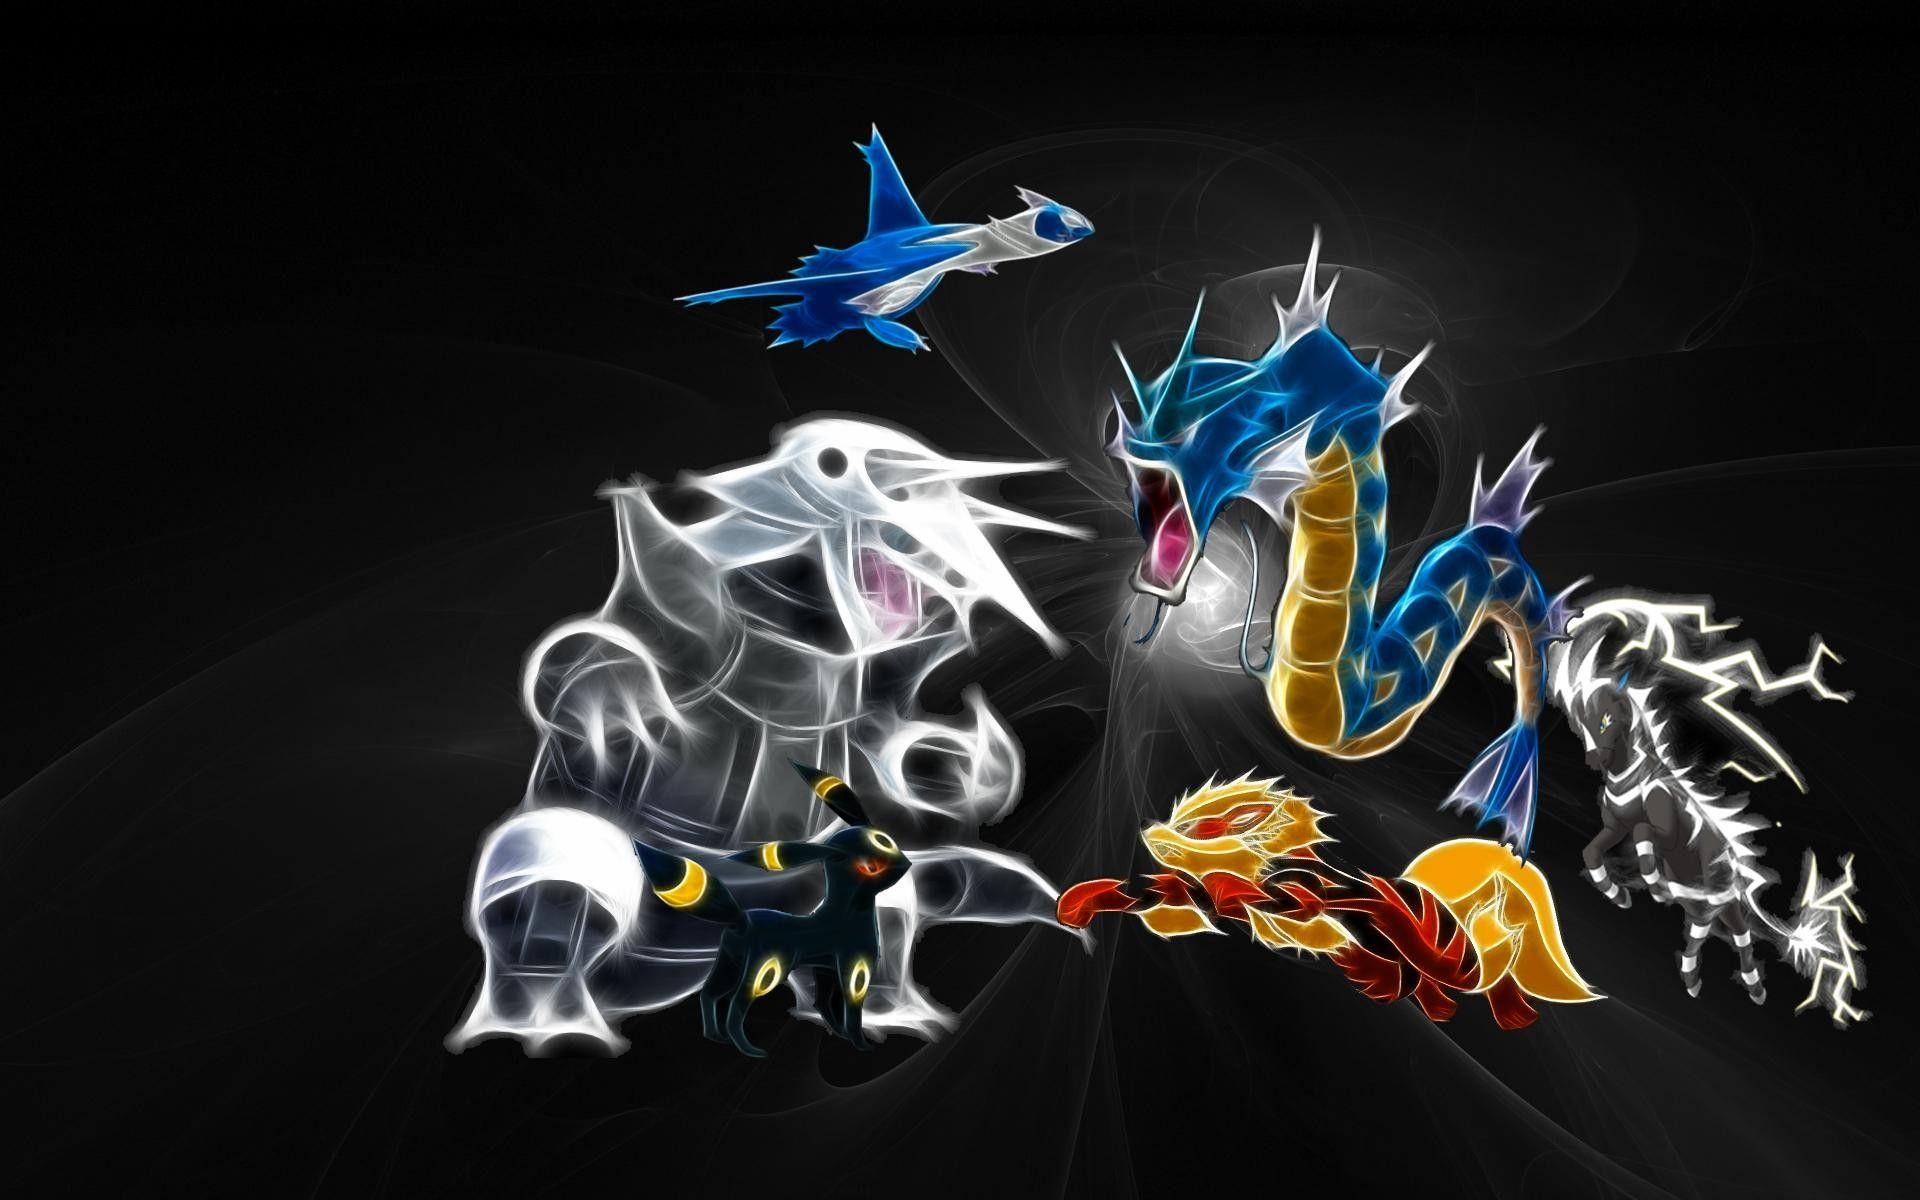 Shiny Pokemon Wallpaper by SupernovaSH on DeviantArt